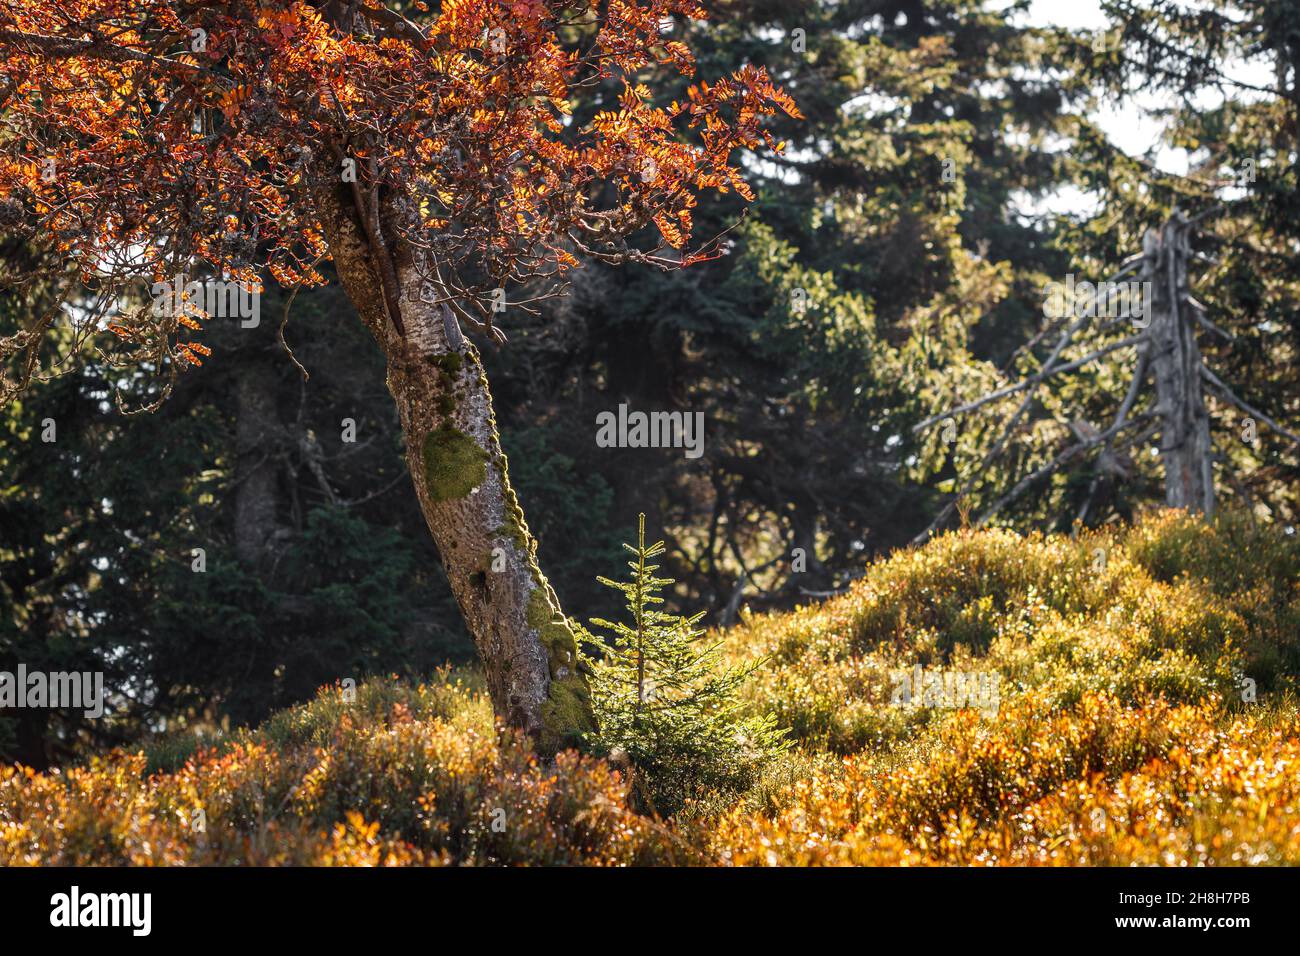 Arbre Rowan et jeune arbre d'épinette dans le paysage de la nature d'automne.Saison d'automne en forêt de montagne avec des bleuets Banque D'Images